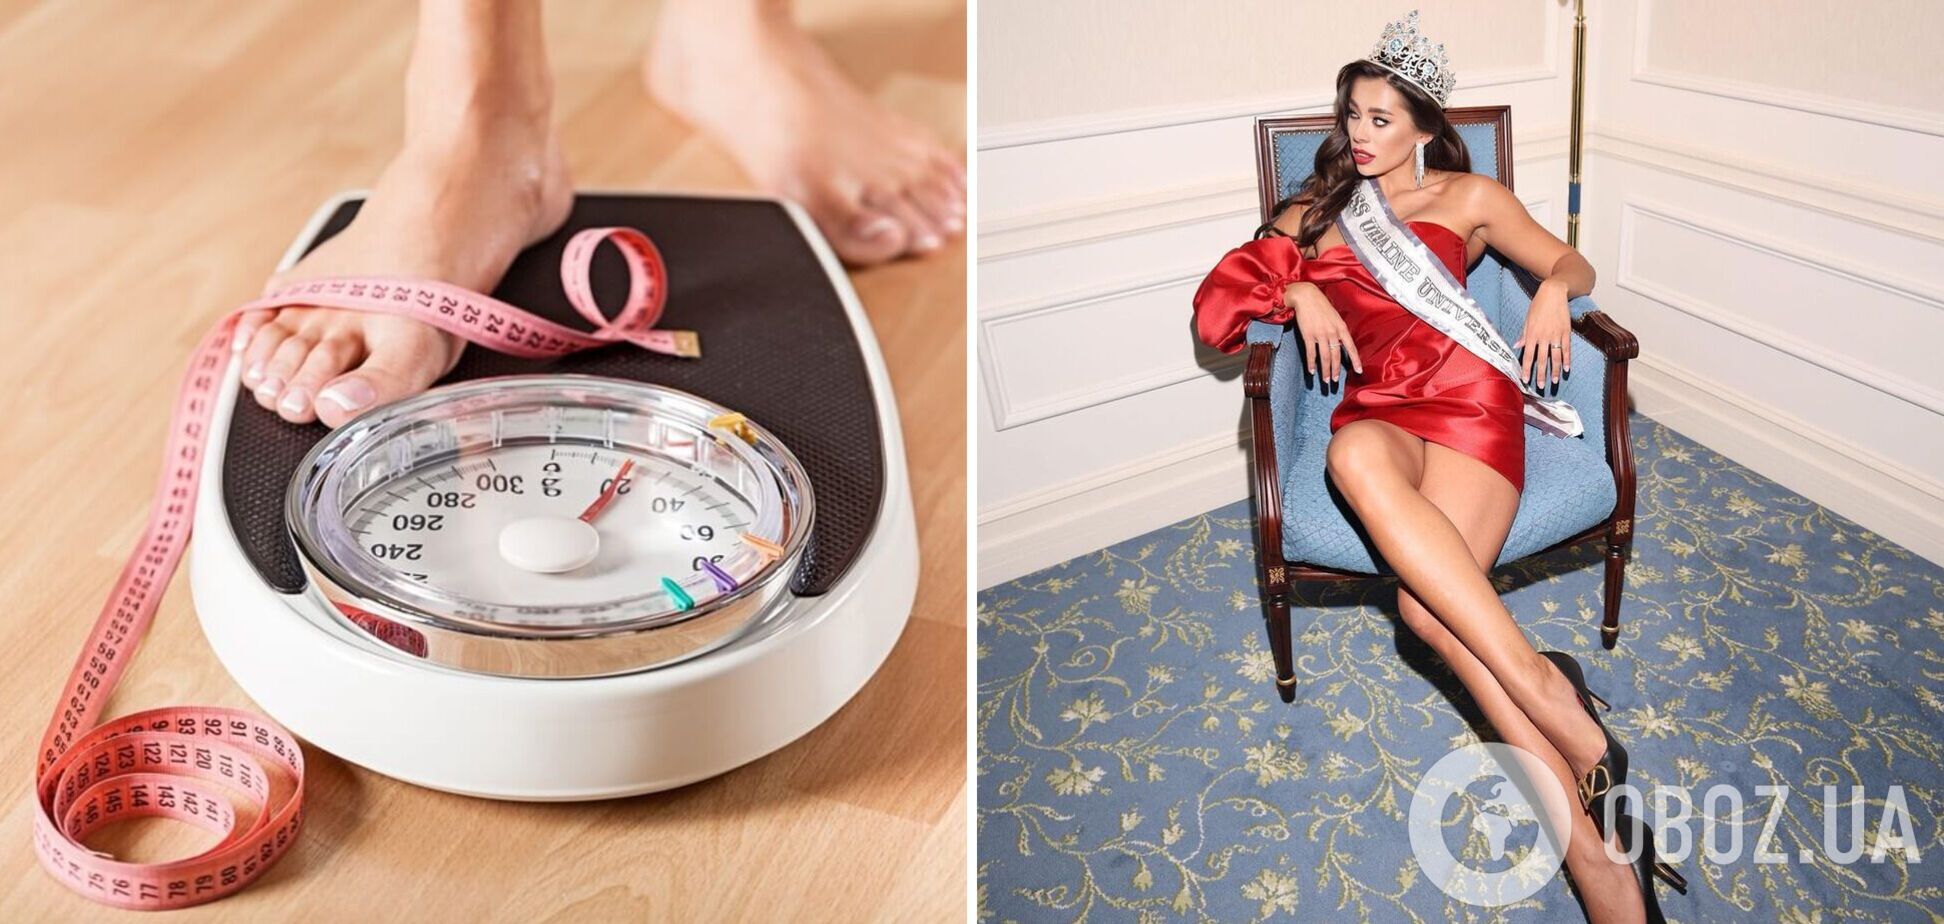 'Міс Україна Всесвіт' Анна Неплях набрала 9 кілограмів із початку війни. Фото до і після